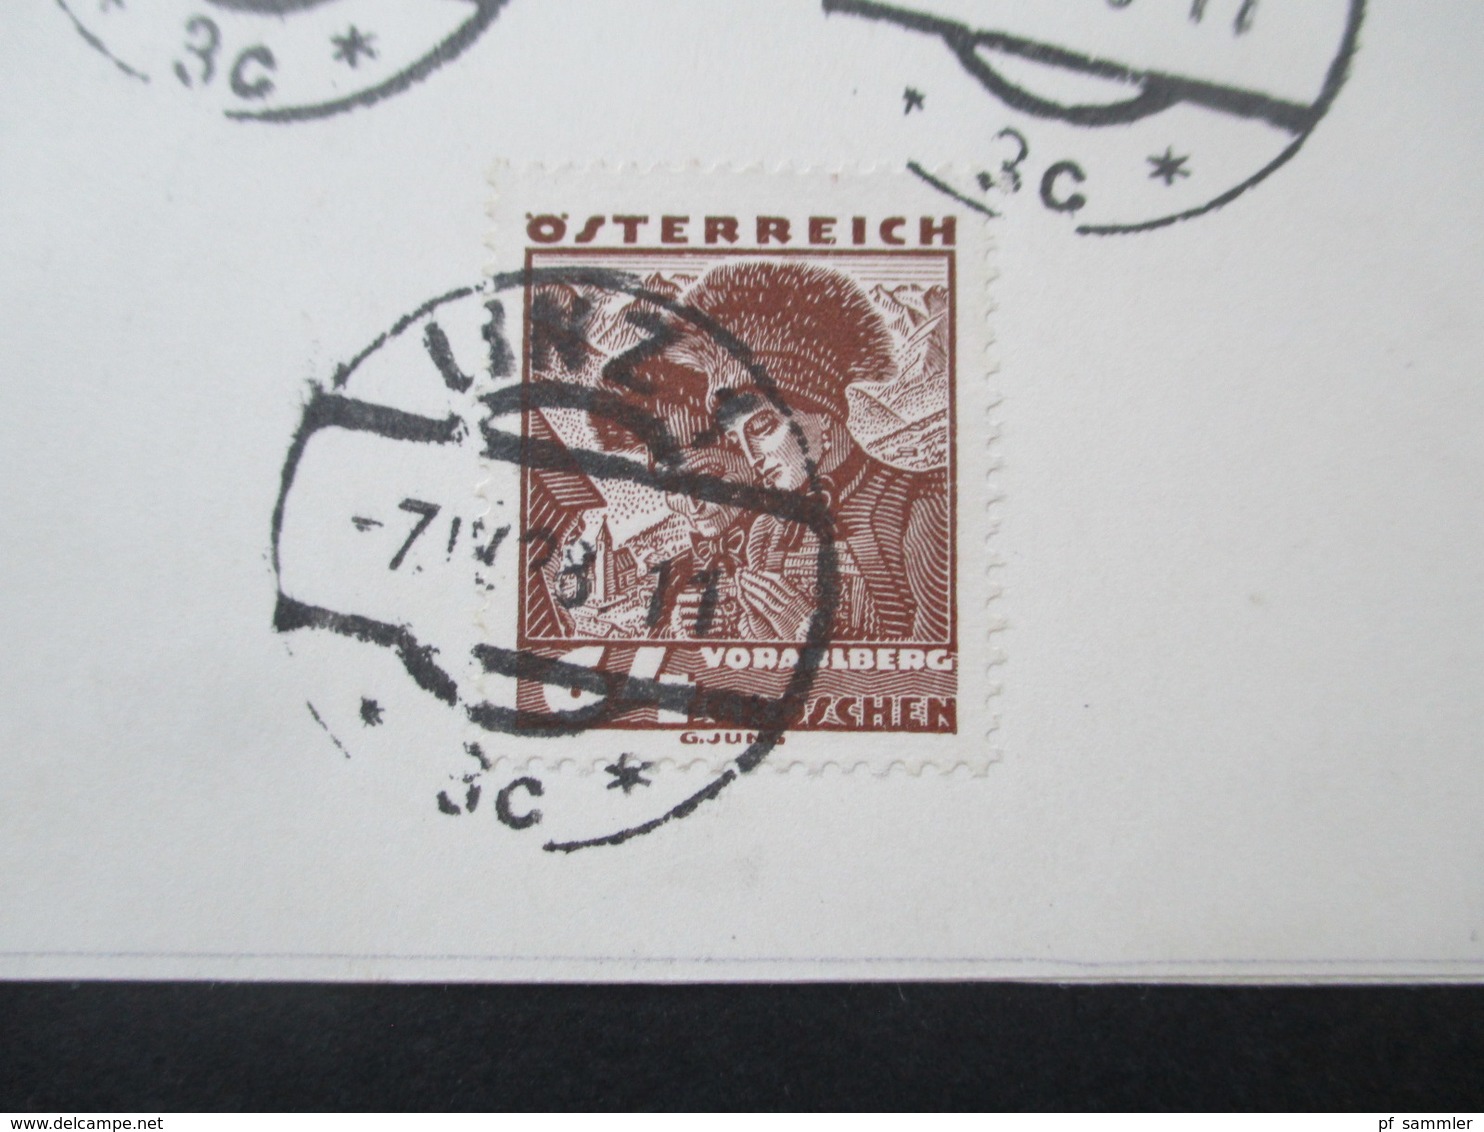 Österreich 1934 Volkstrachten 5 Werte Sonderkarte SST Der Führer Spricht Linz 7. April 1938 Besetzte Ostmark Propaganda - Covers & Documents